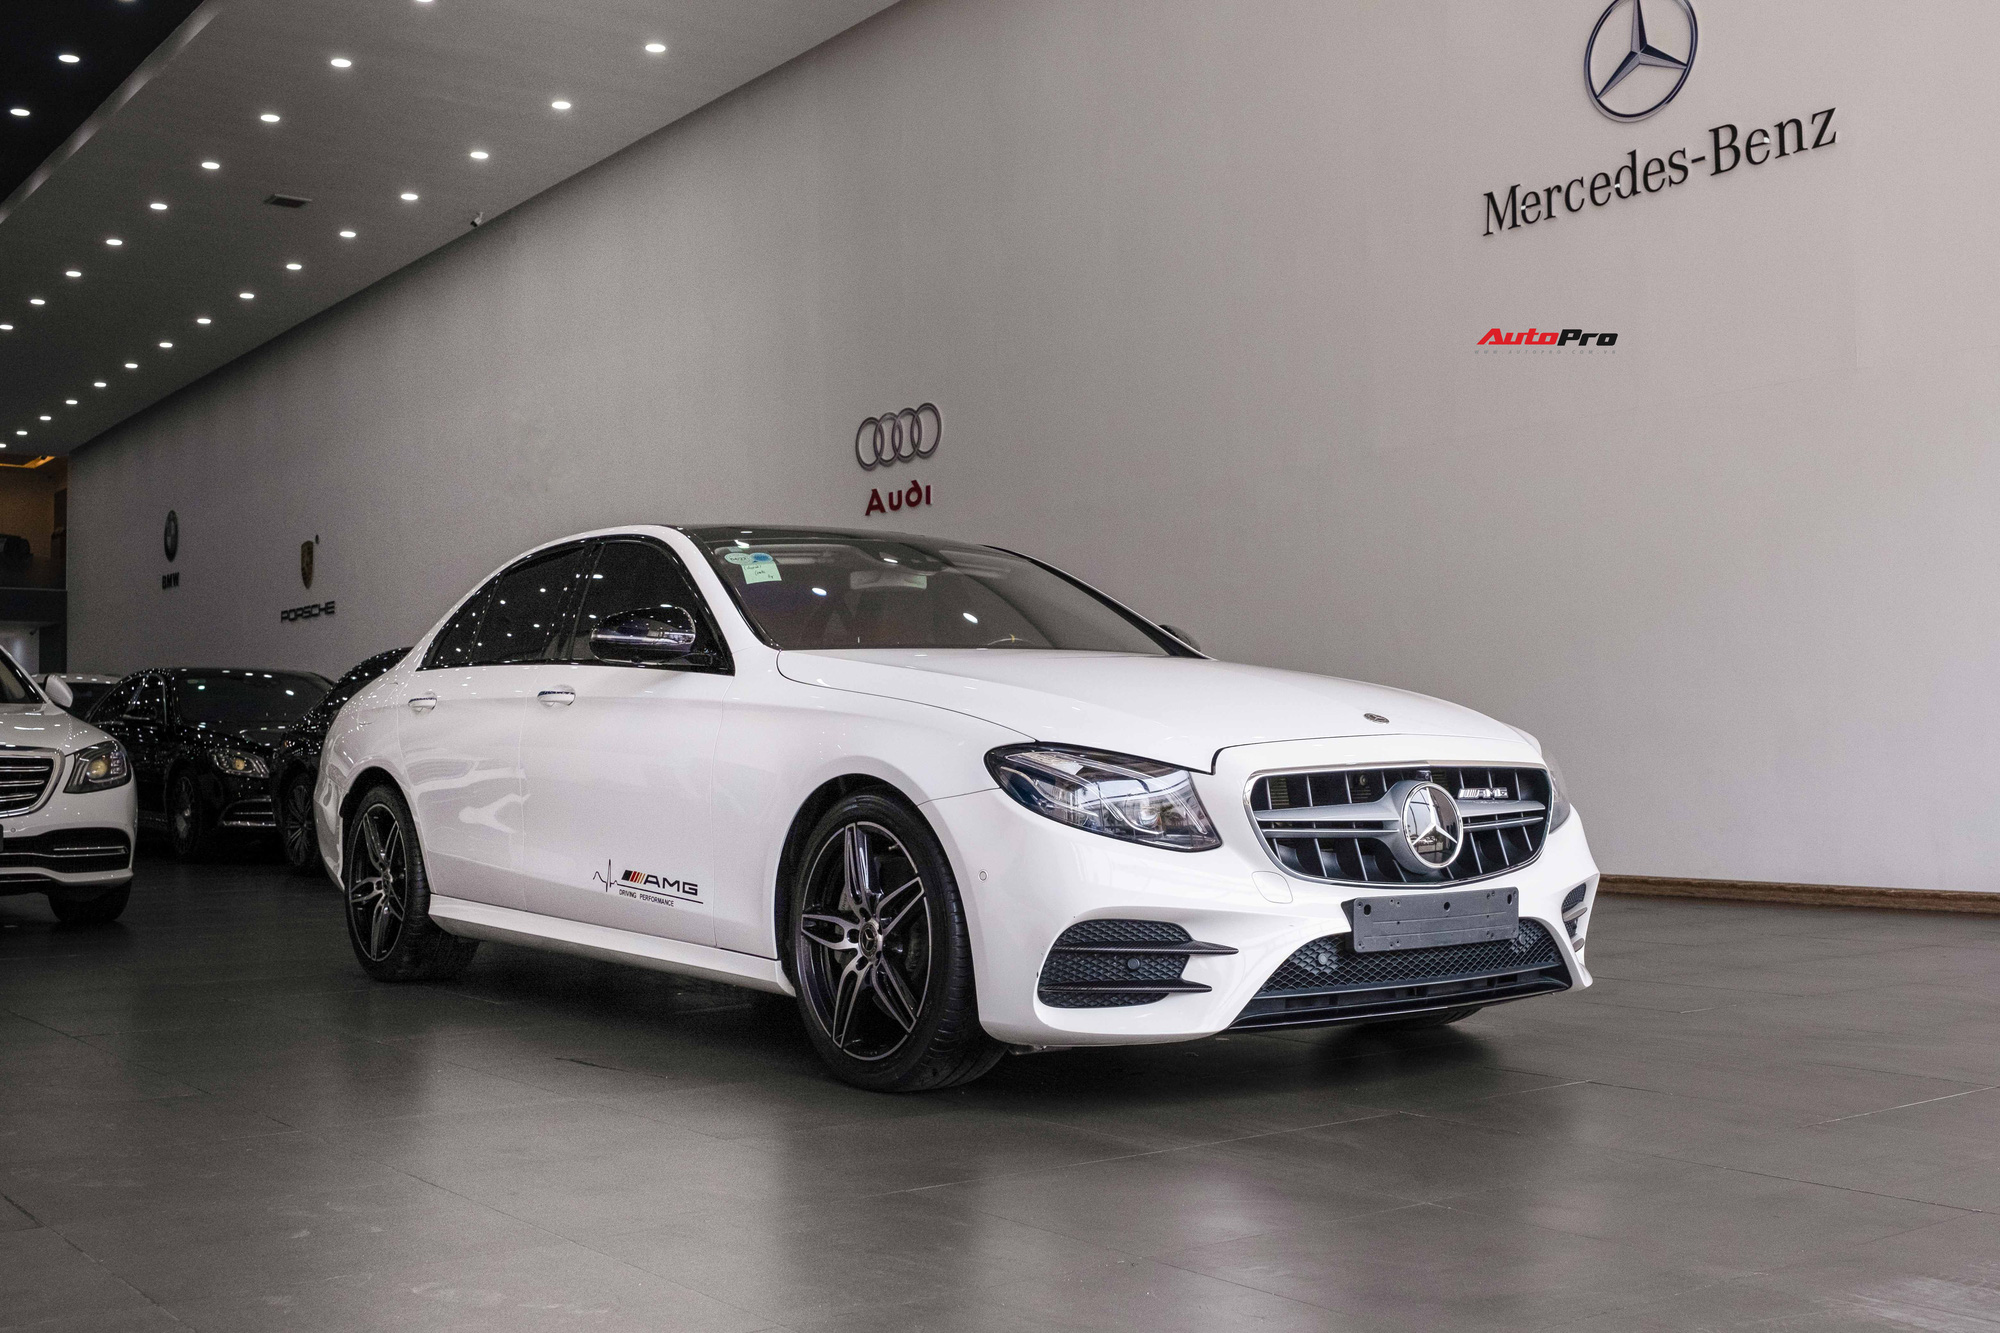 Chủ nhân Mercedes-Benz E 300 AMG rao bán xe giá 2,6 tỷ, tiết lộ vừa mất 200 triệu để lột xác nội/ngoại thất - Ảnh 8.